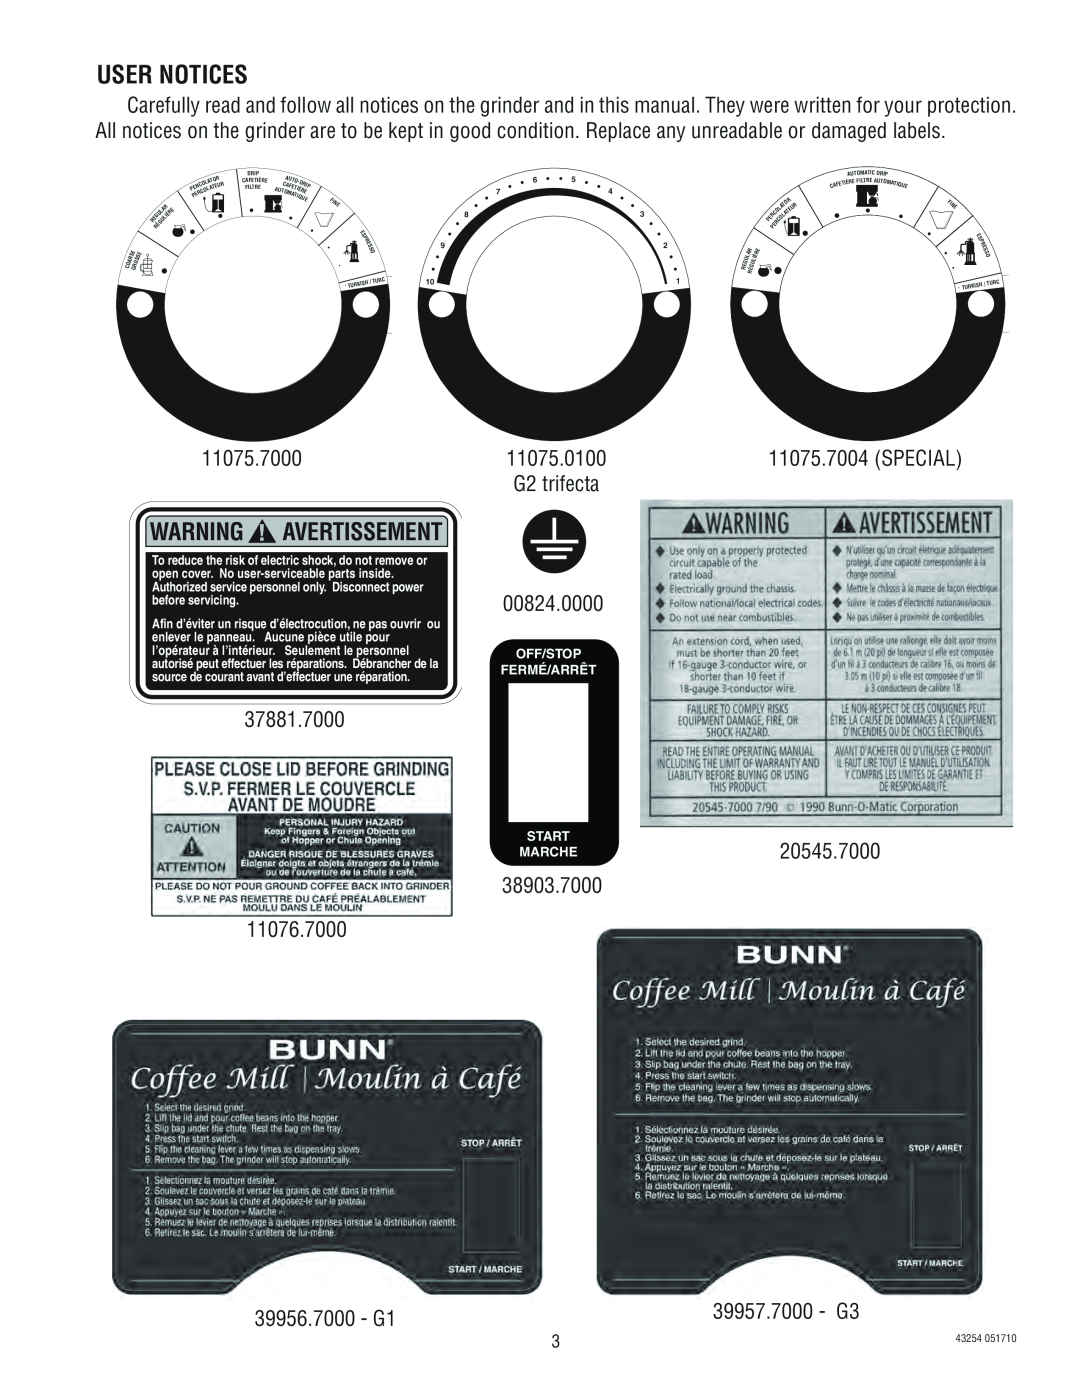 Bunn G2, G3 service manual User Notices, Warning Avertissement, Off/Stop Fermé/Arrêt Start, 43254, Tique 